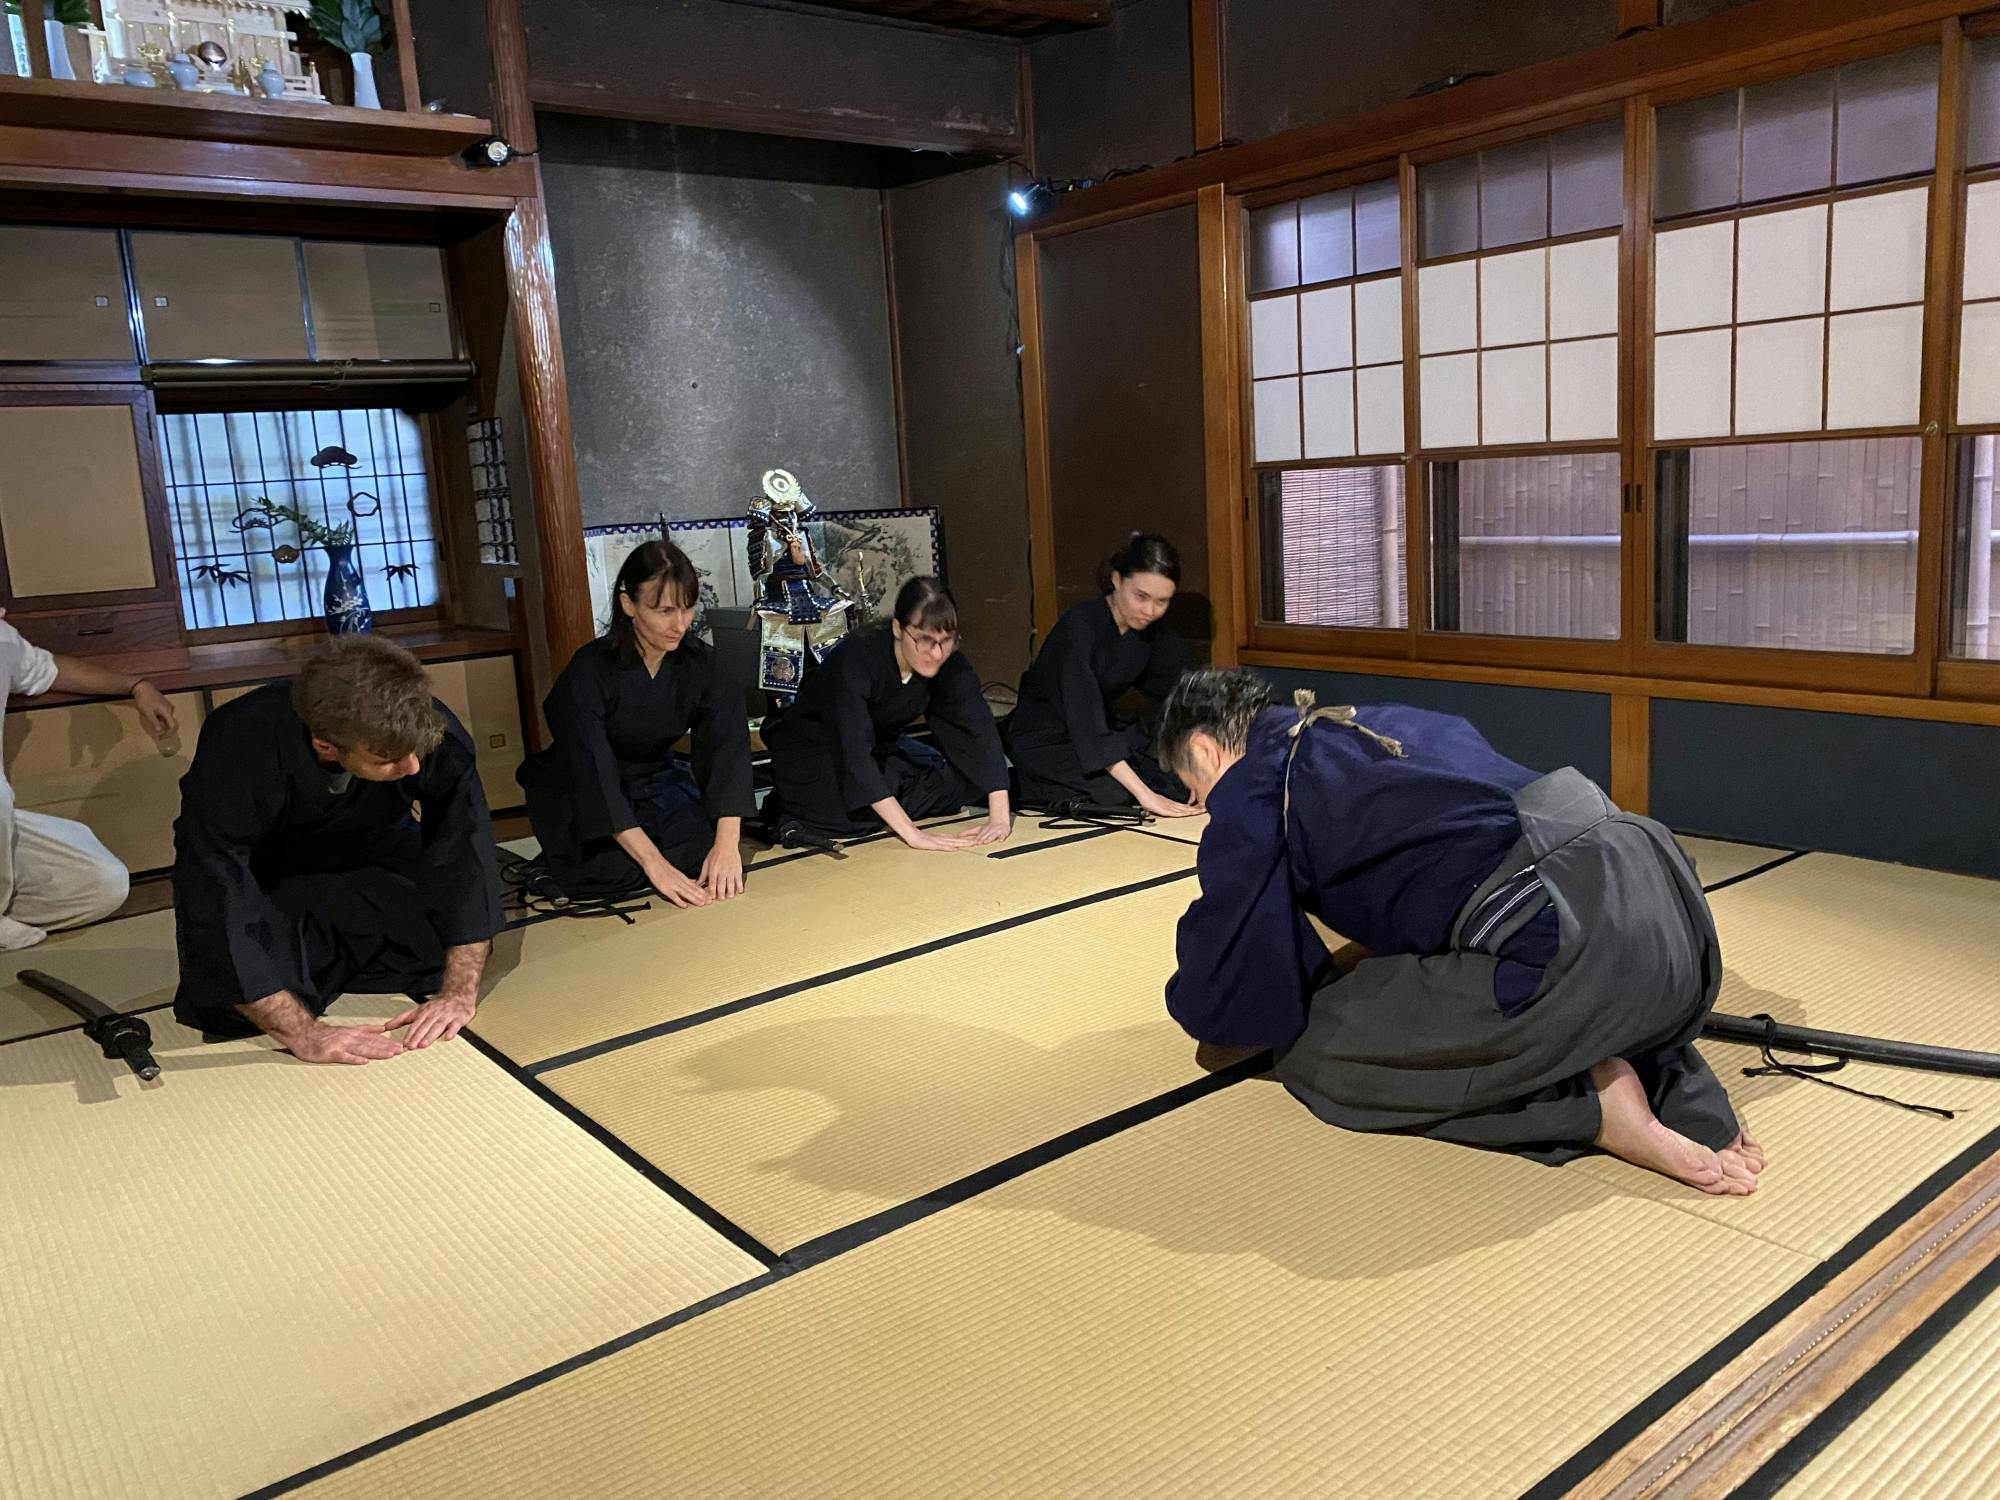 Authentisches Samurai-Erlebnis mit echten Schauspielern in Tokio